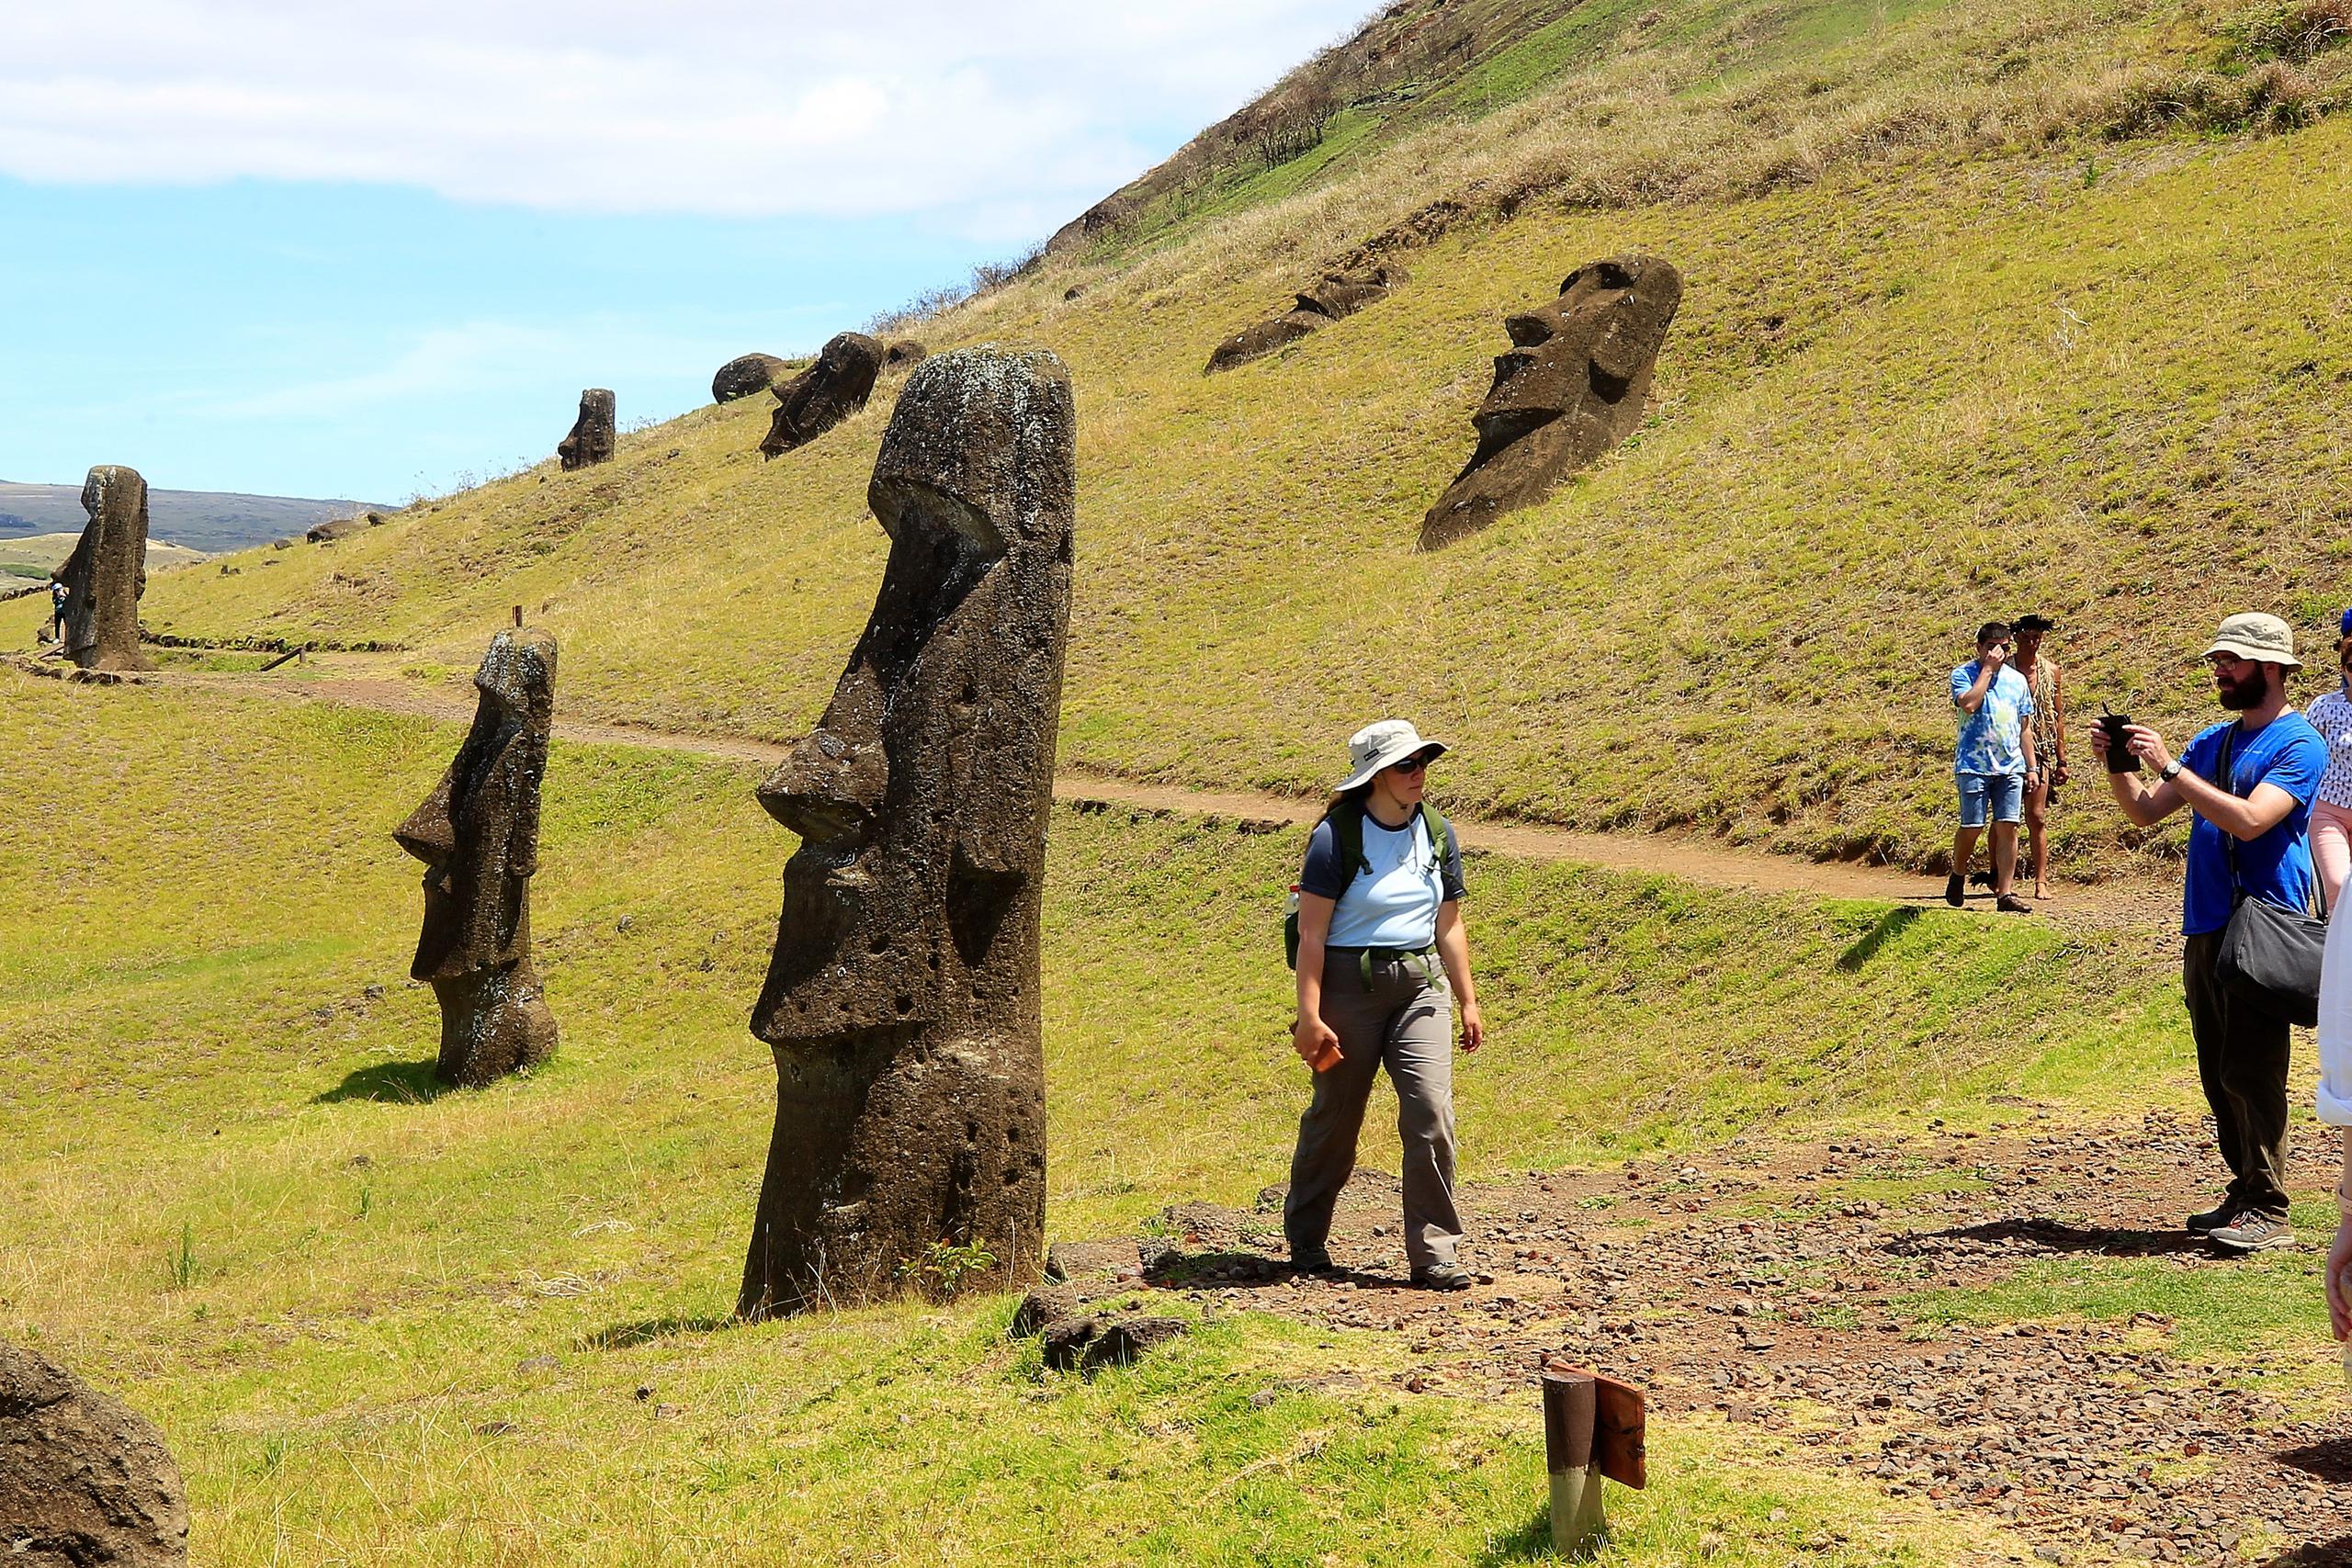 Antes de la pandemia, la compañía había llegado a tener hasta 14 vuelos semanales, ya que Rapa Nui -nombre indígena de la isla- es una de las grandes atracciones turísticas de Chile.